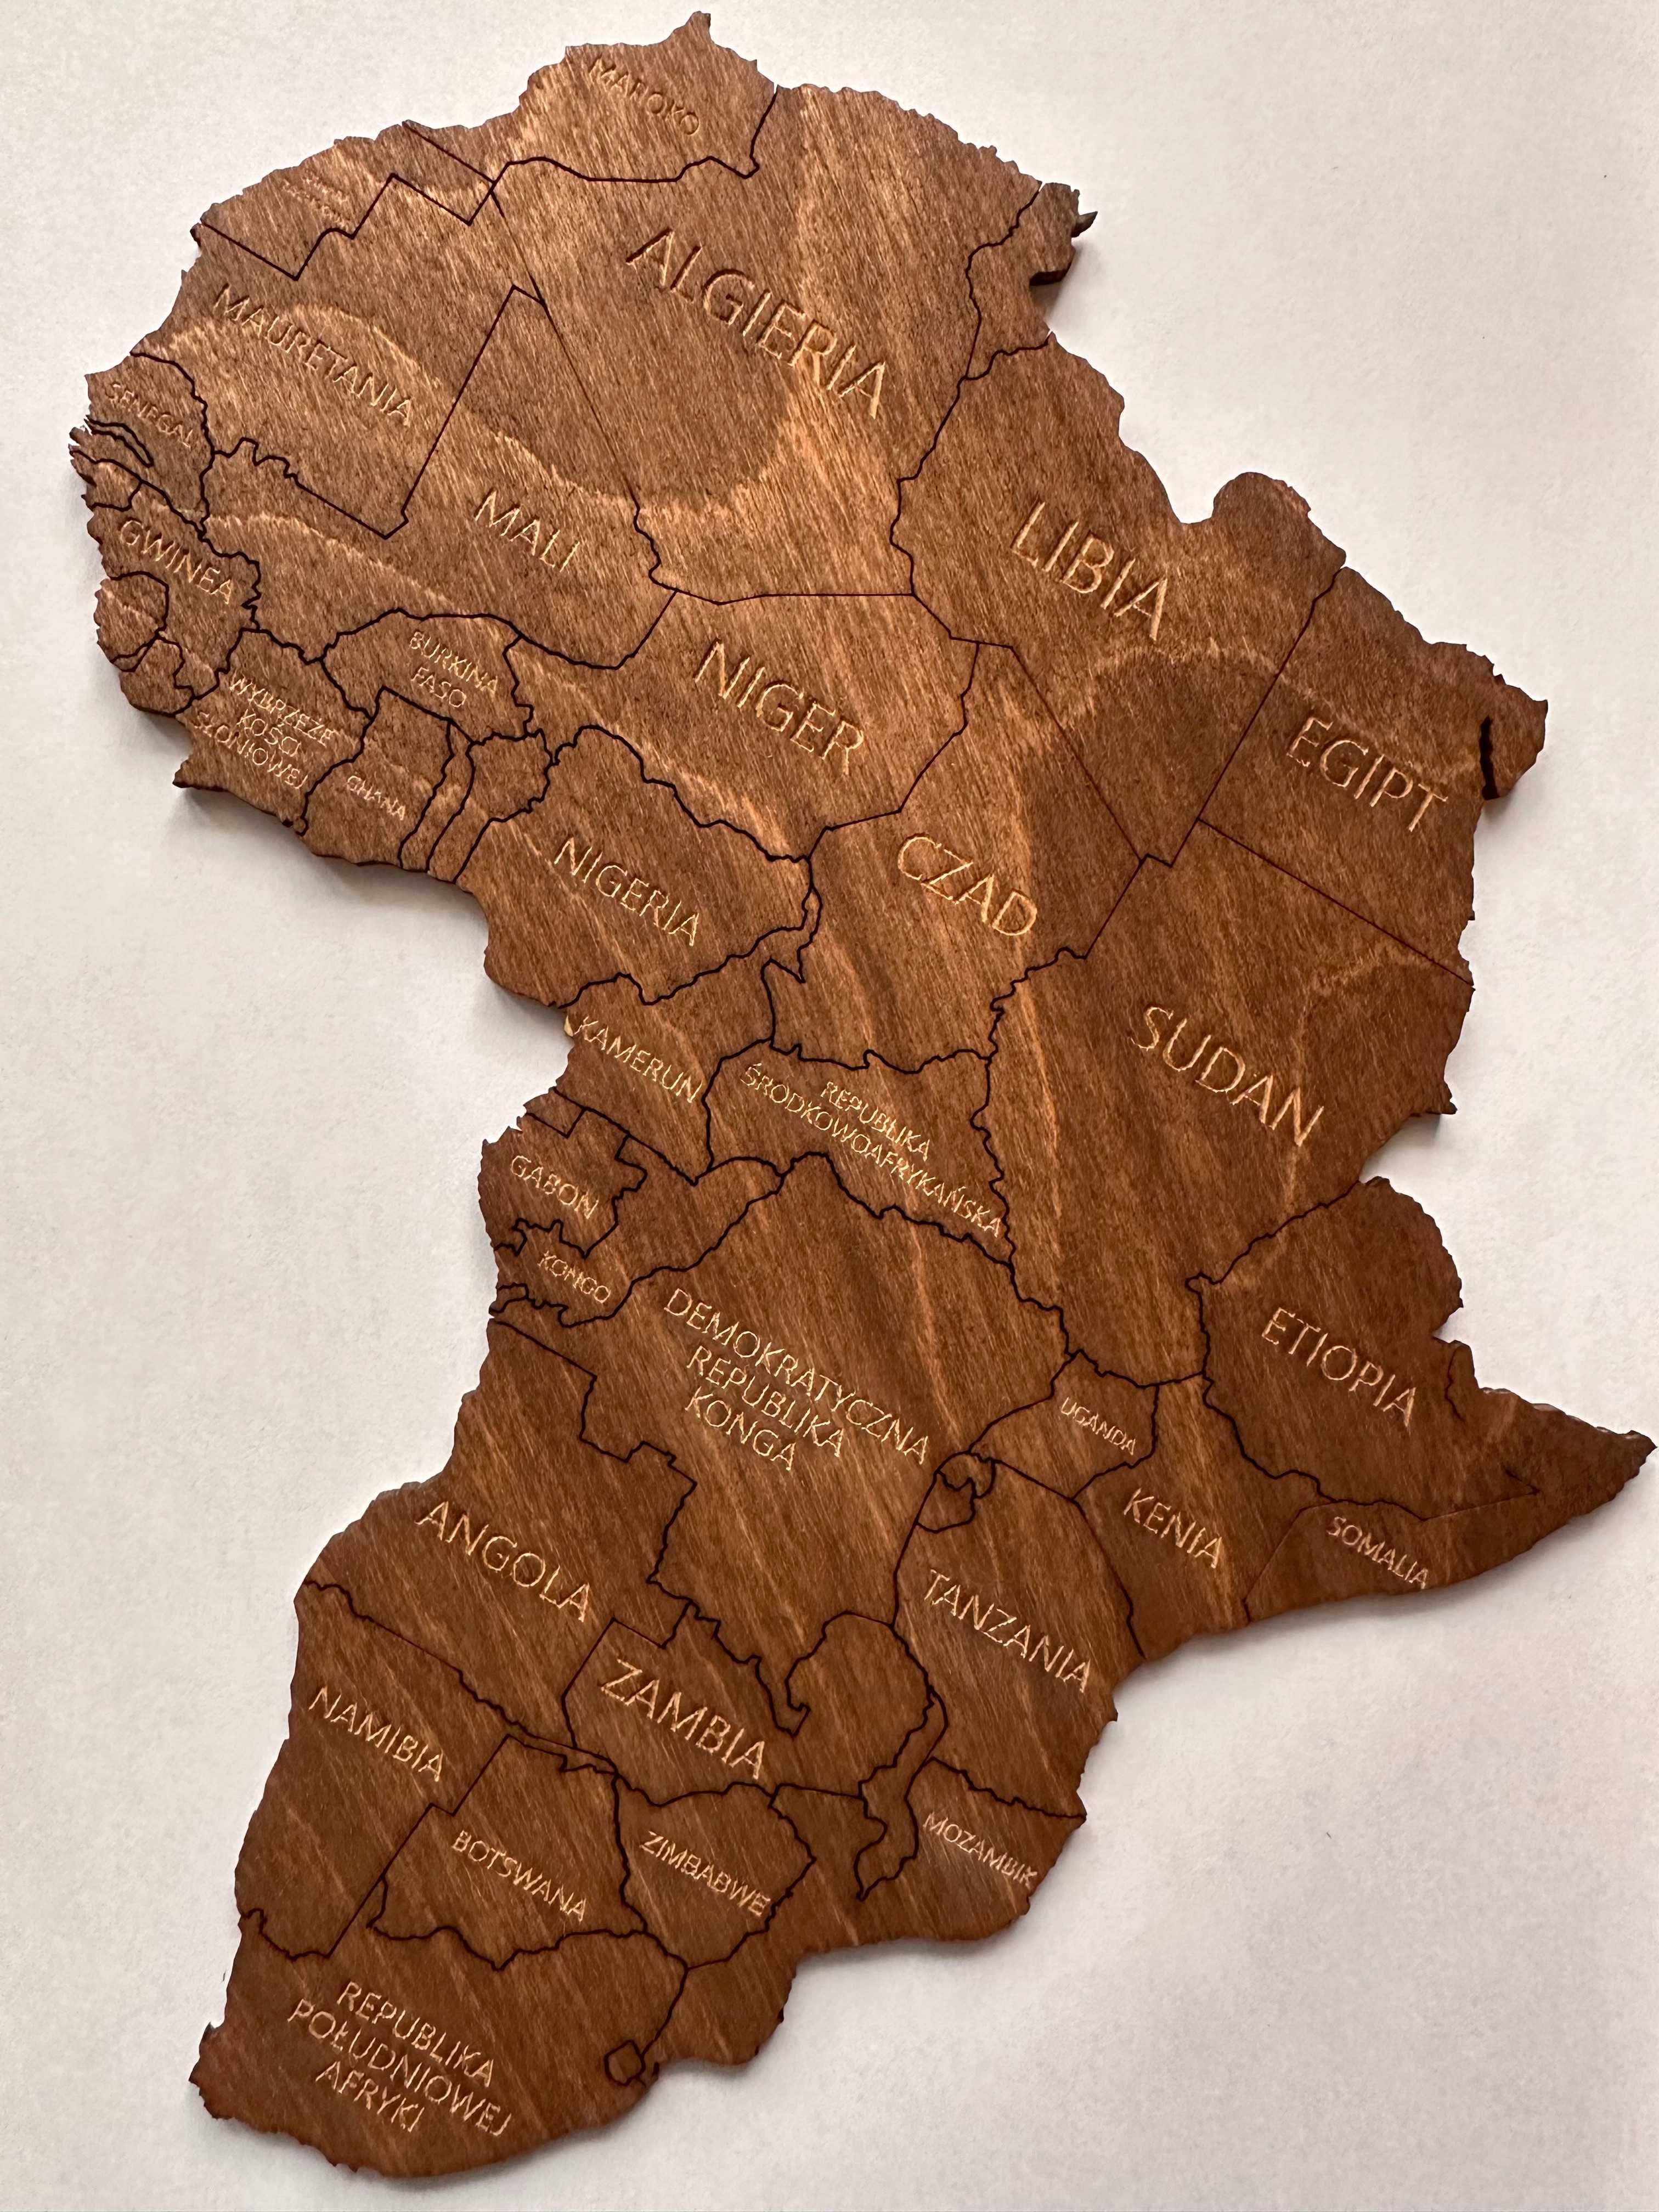 Nowa Drewniana Mapa Świata Palisander (ciemny brąz, drewno) 150x90cm